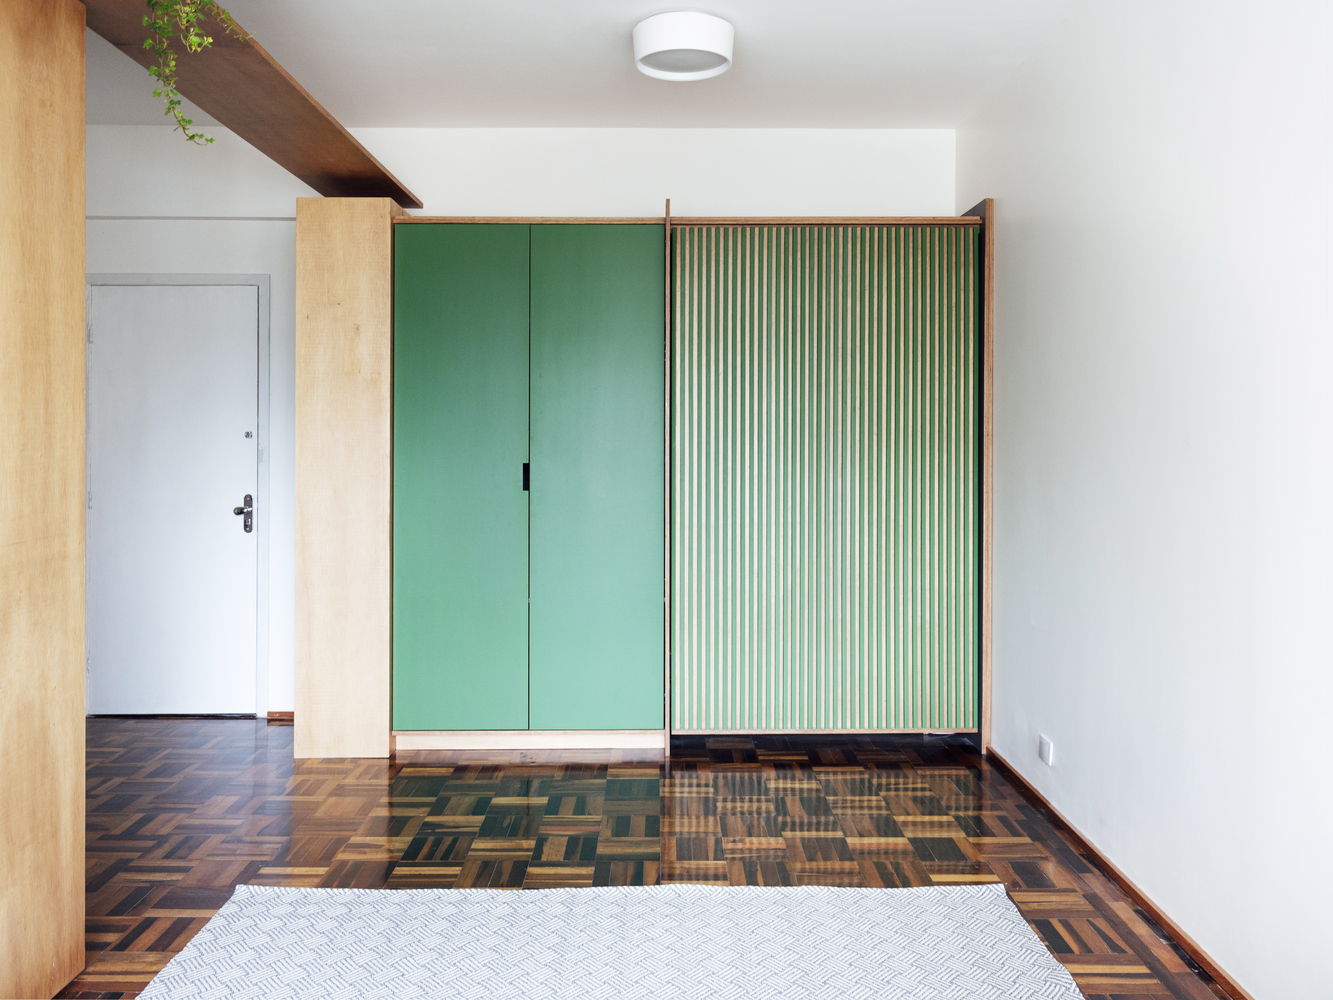 Hệ tủ quần áo tông màu xanh lá cây trong phòng khách tạo điểm nhấn sinh động, hút mắt.